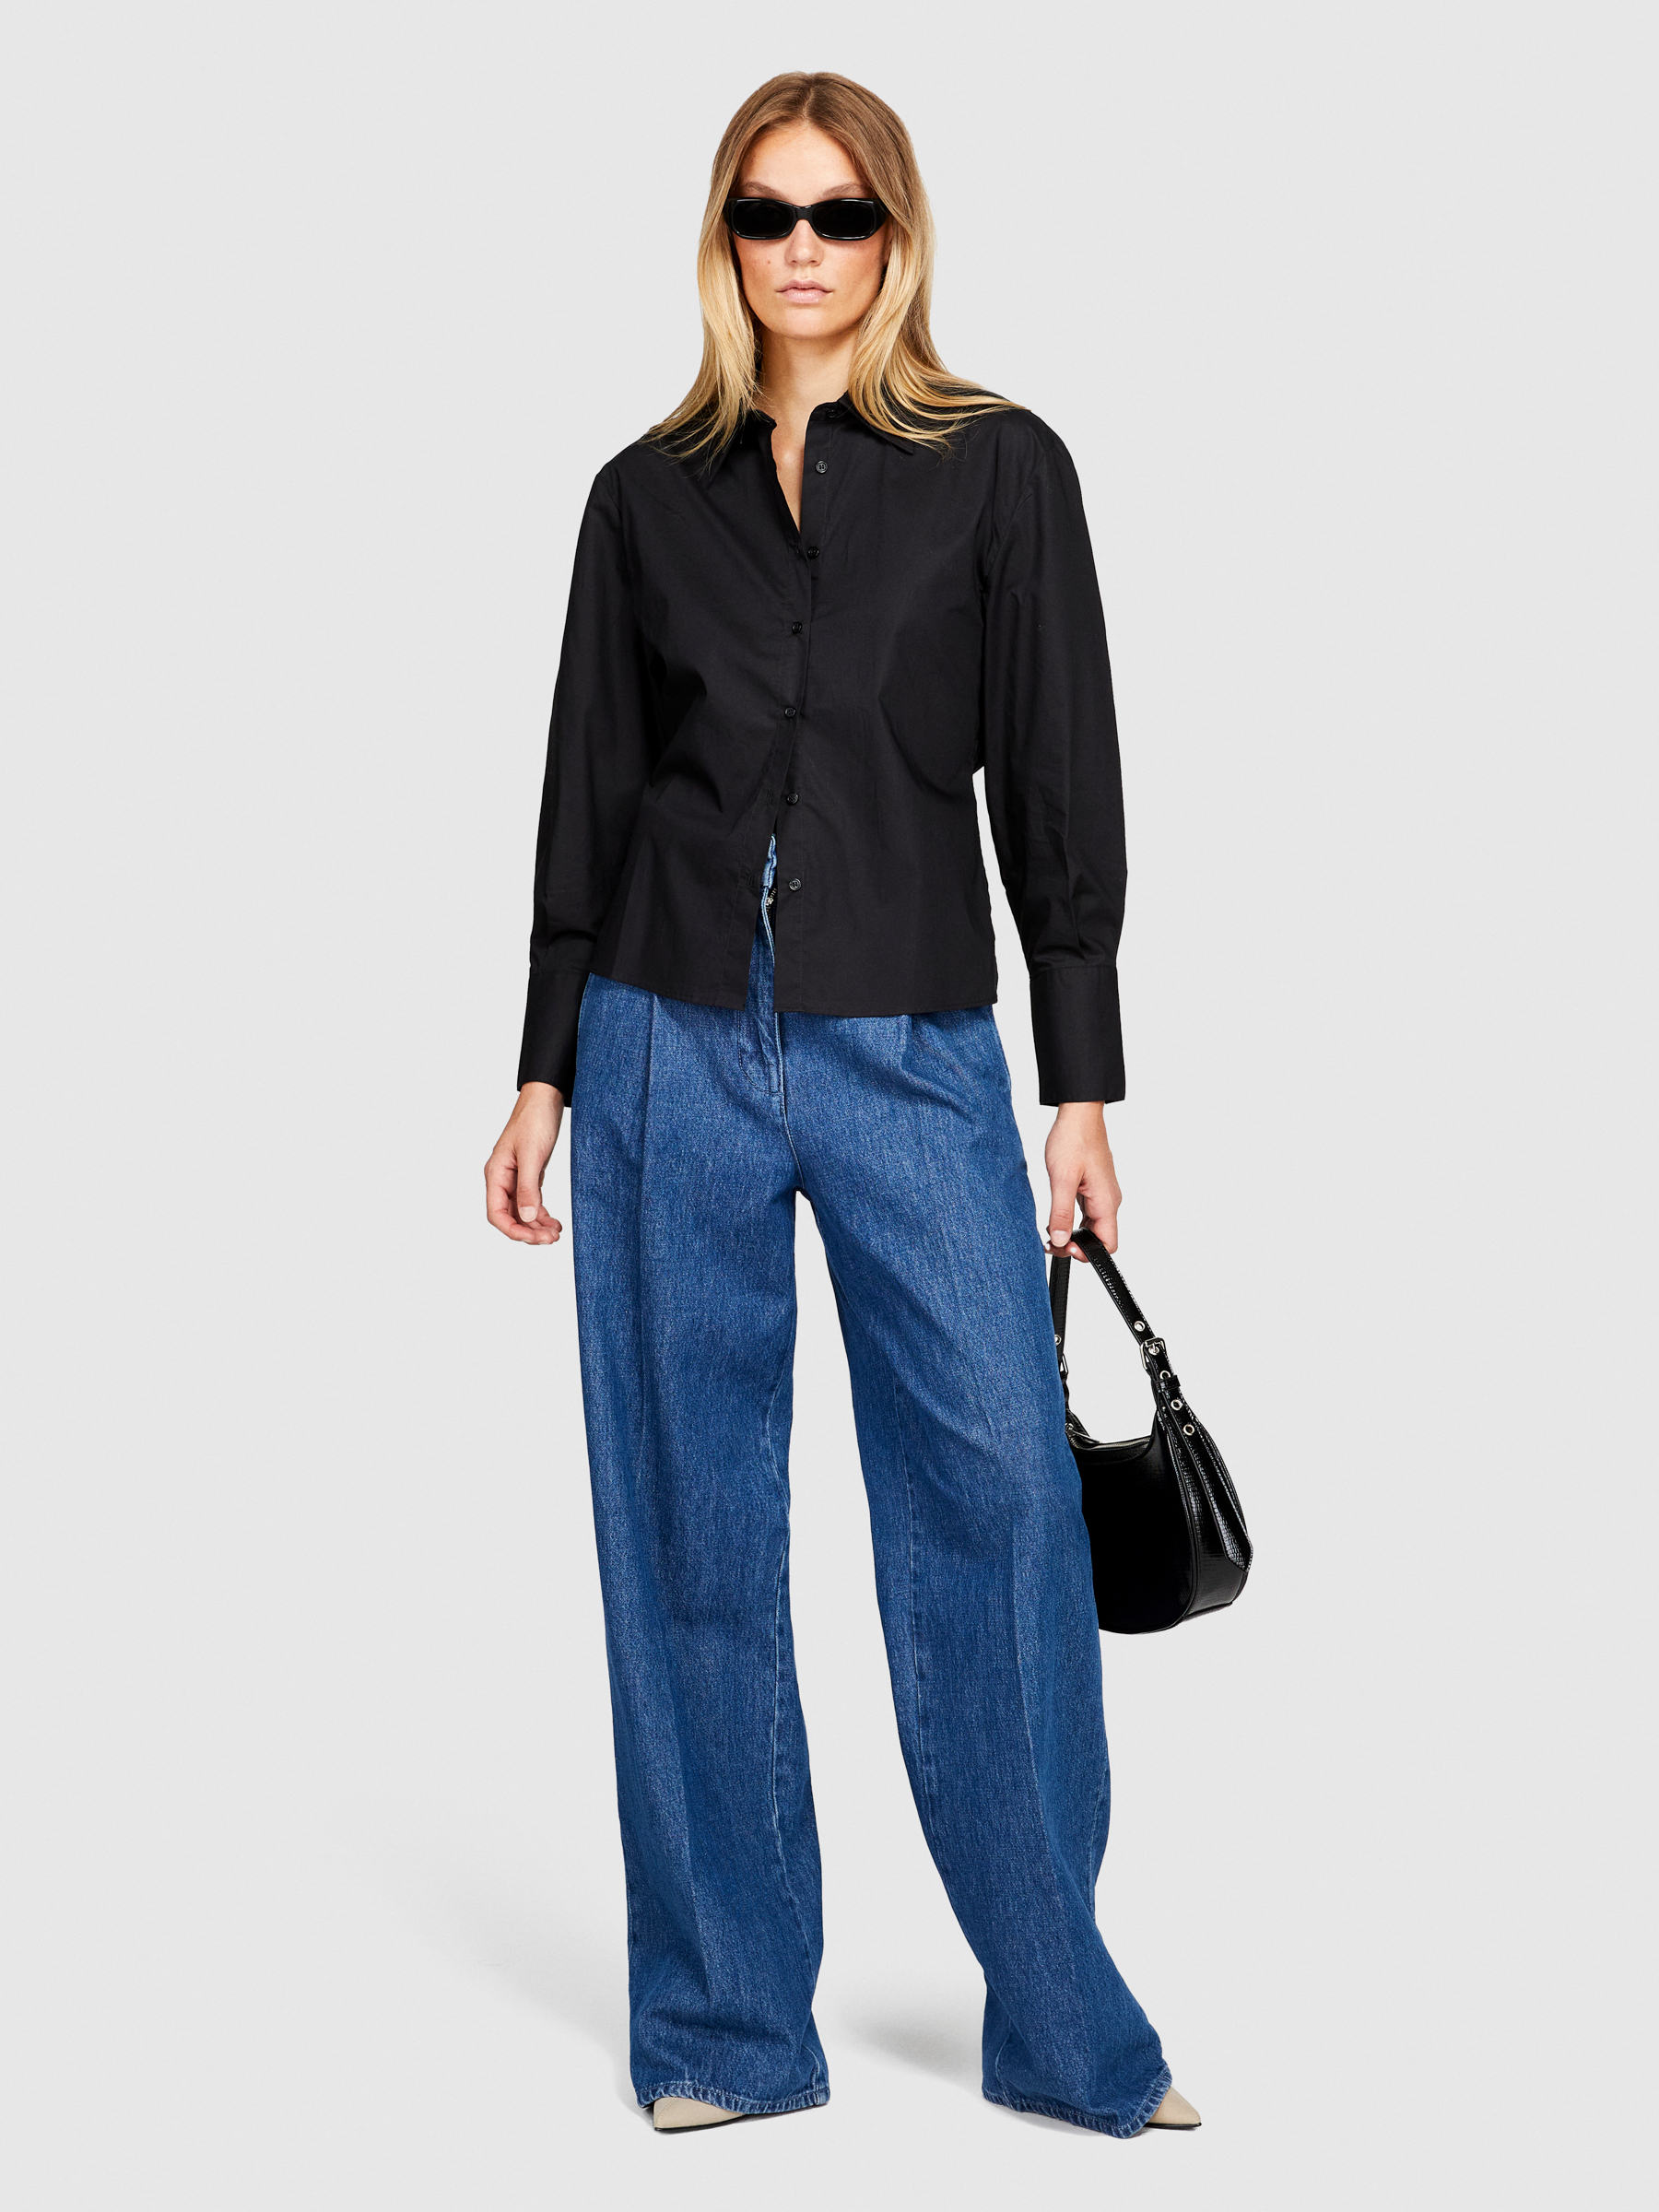 Sisley - Asymmetrical Shirt, Woman, Black, Size: XS